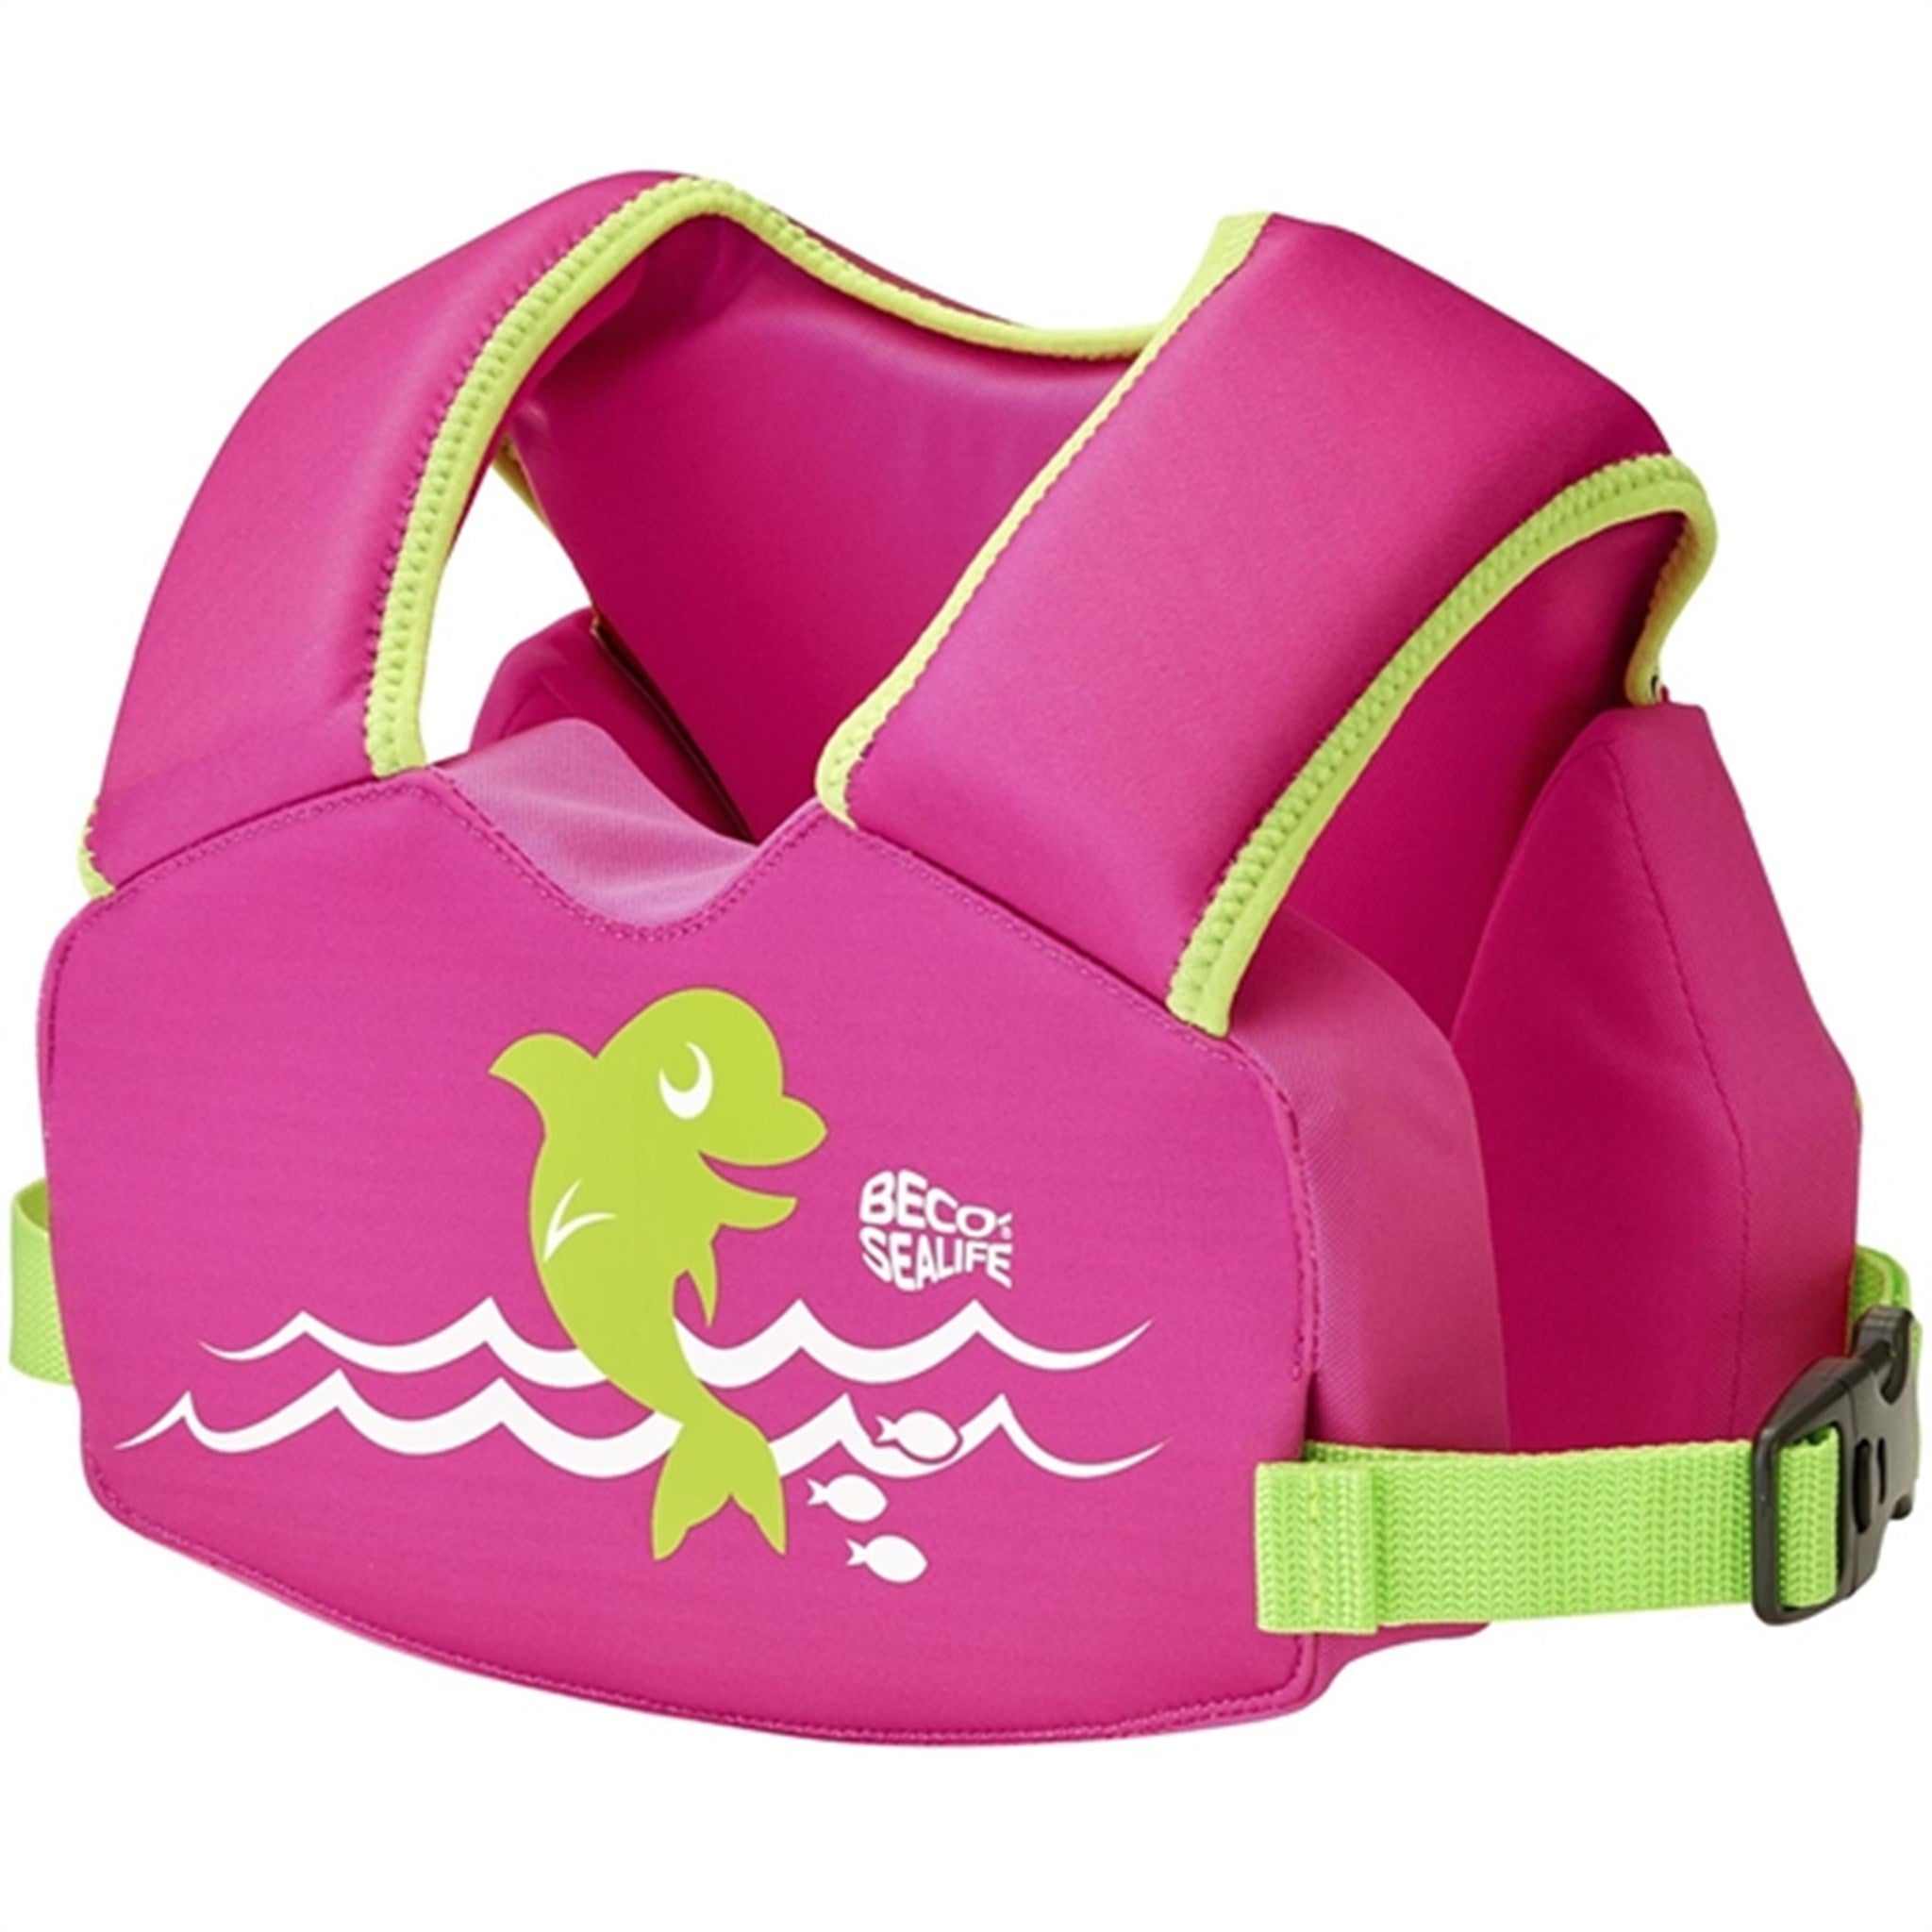 Beco Sealife Svømmevest Easy-fit Pink